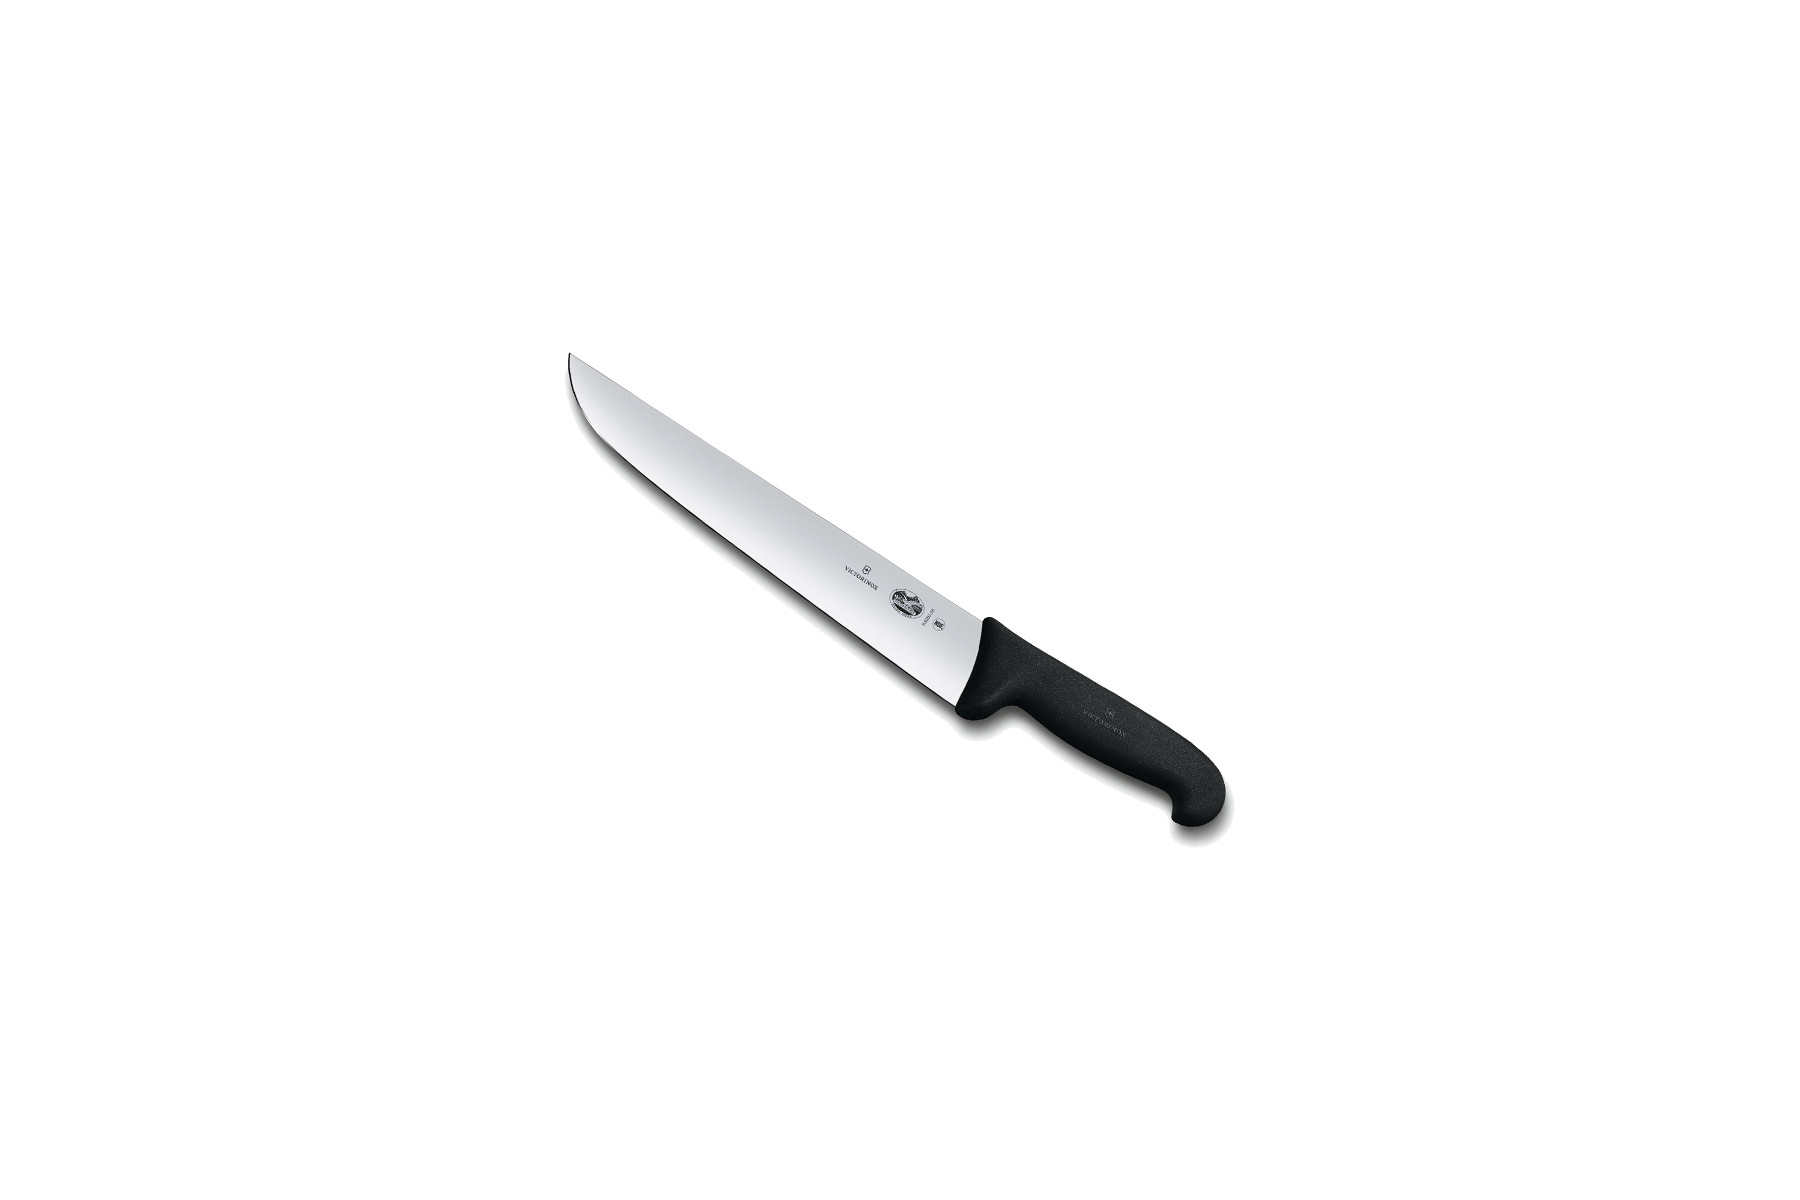 Couteau de boucher Victorinox lame 16 cm - Manche Fibrox noir